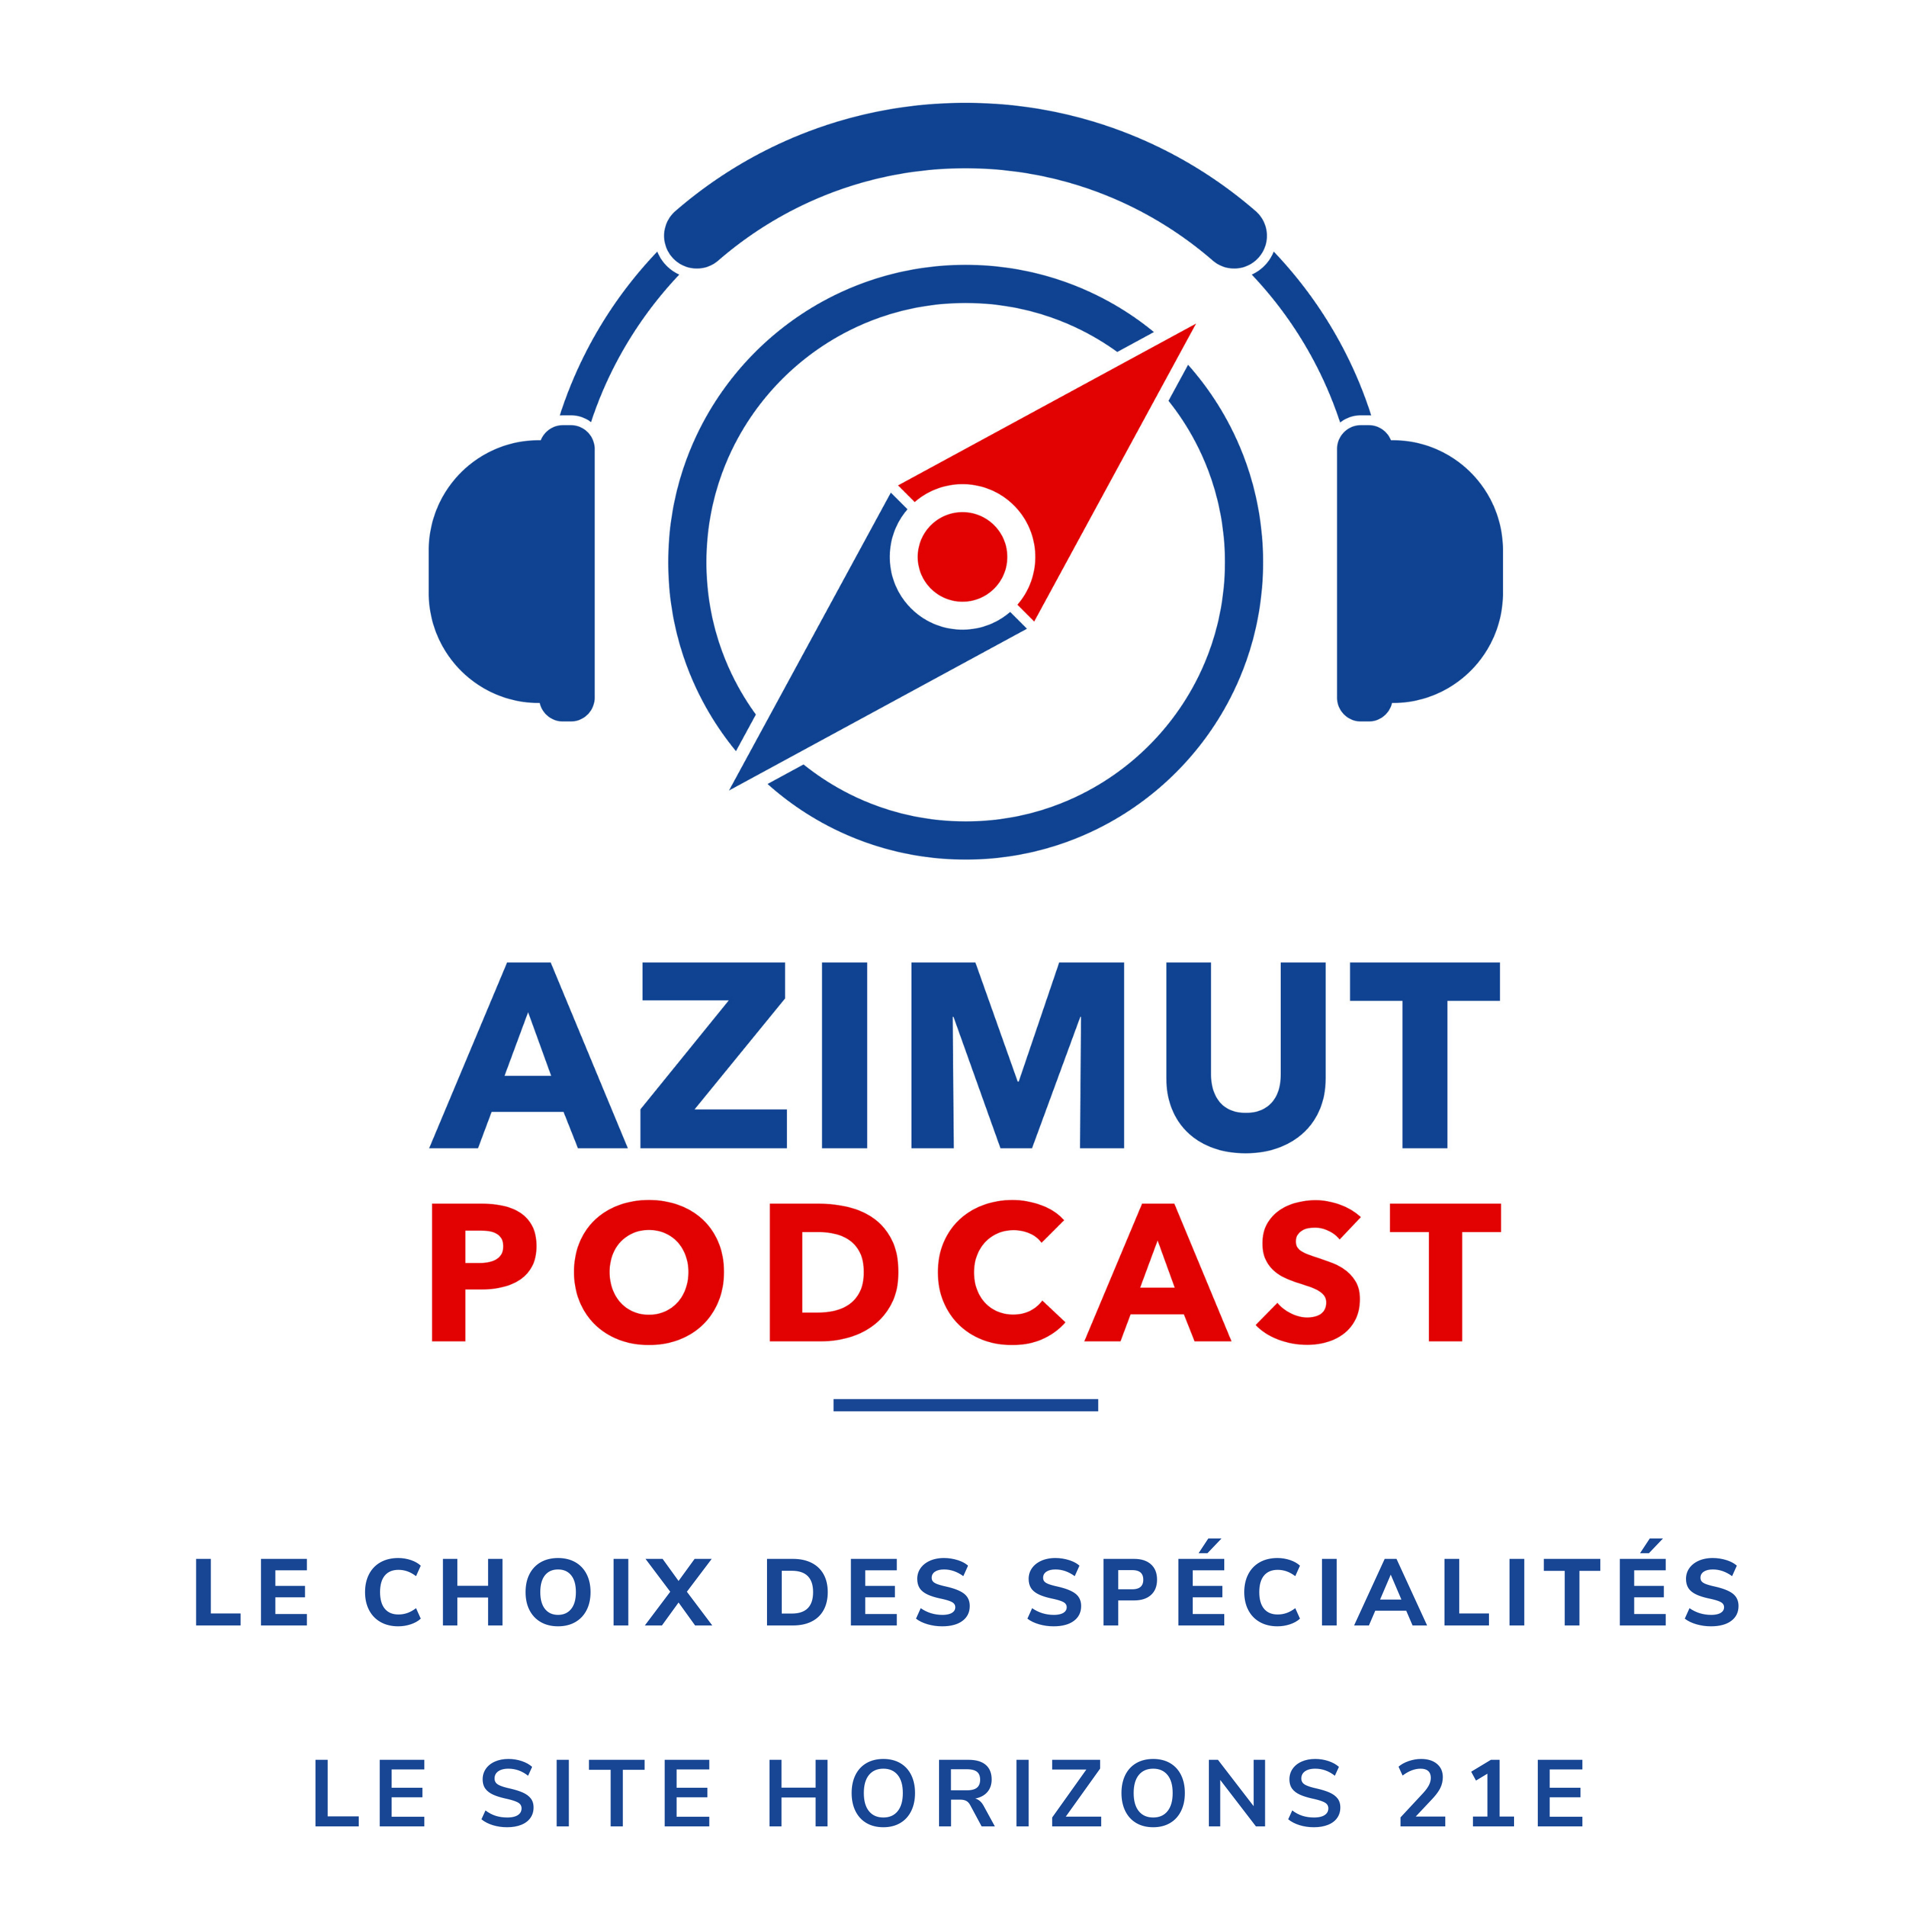 Le site Horizons 21e | LE CHOIX DES SPÉCIALITÉS